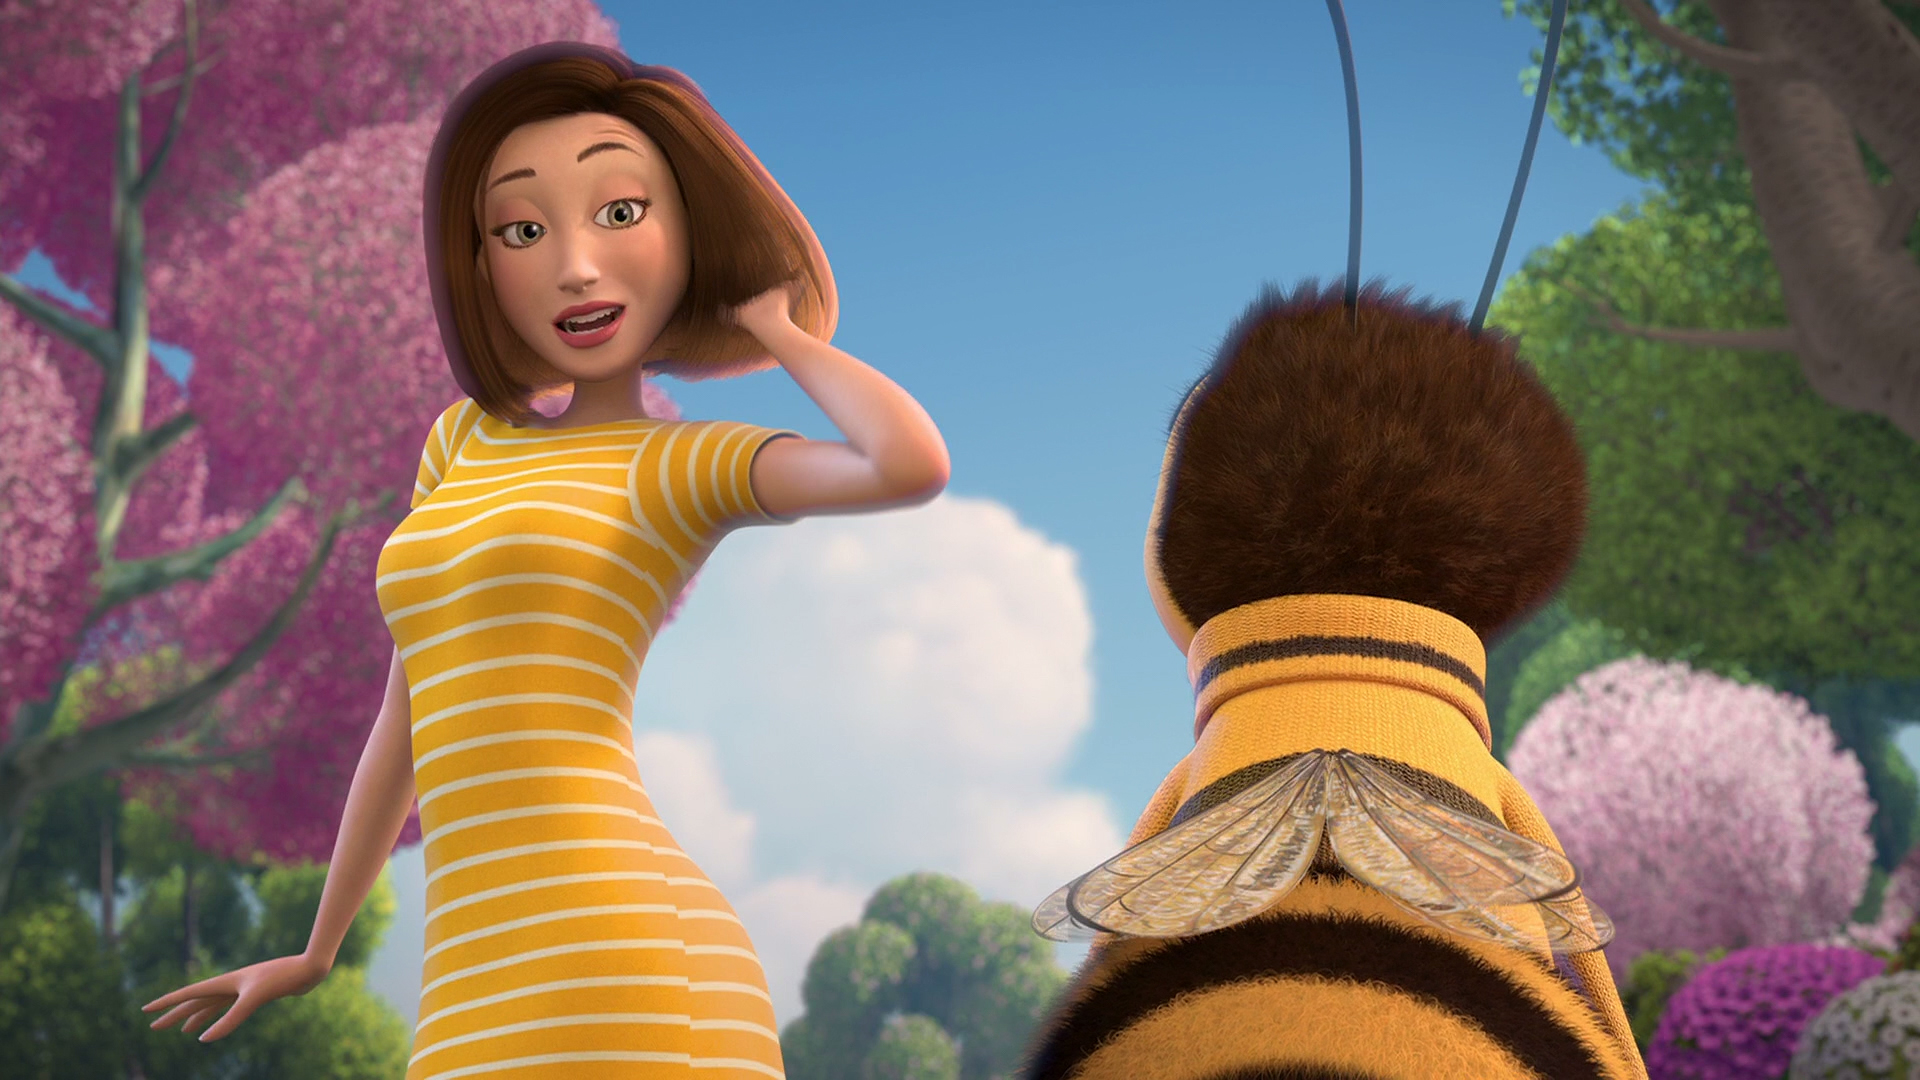 Vanessa Bloom in "Bee Movie" .